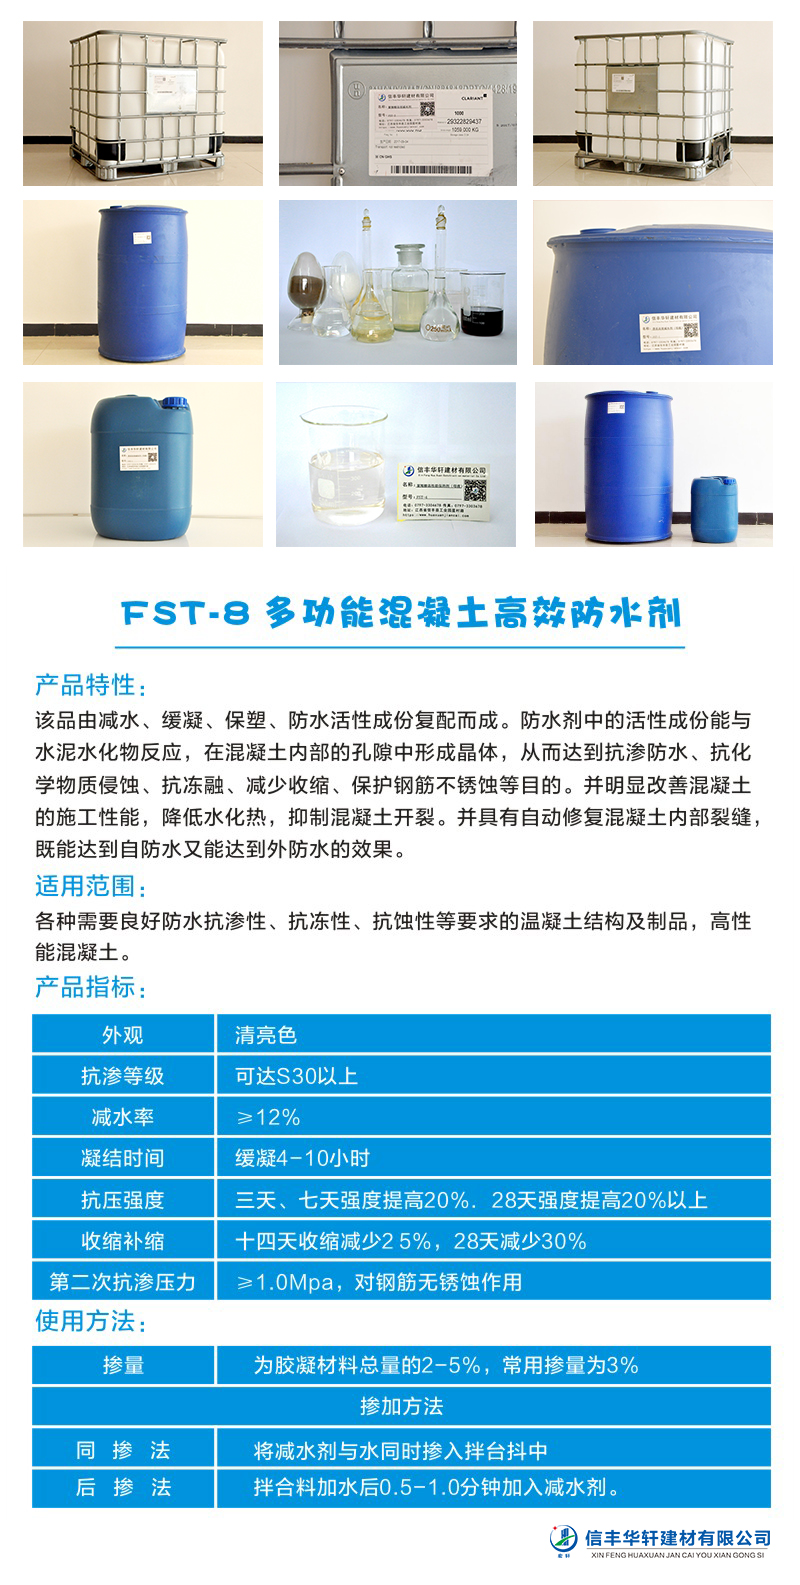 FST-8 多功能混凝土高效防水剂